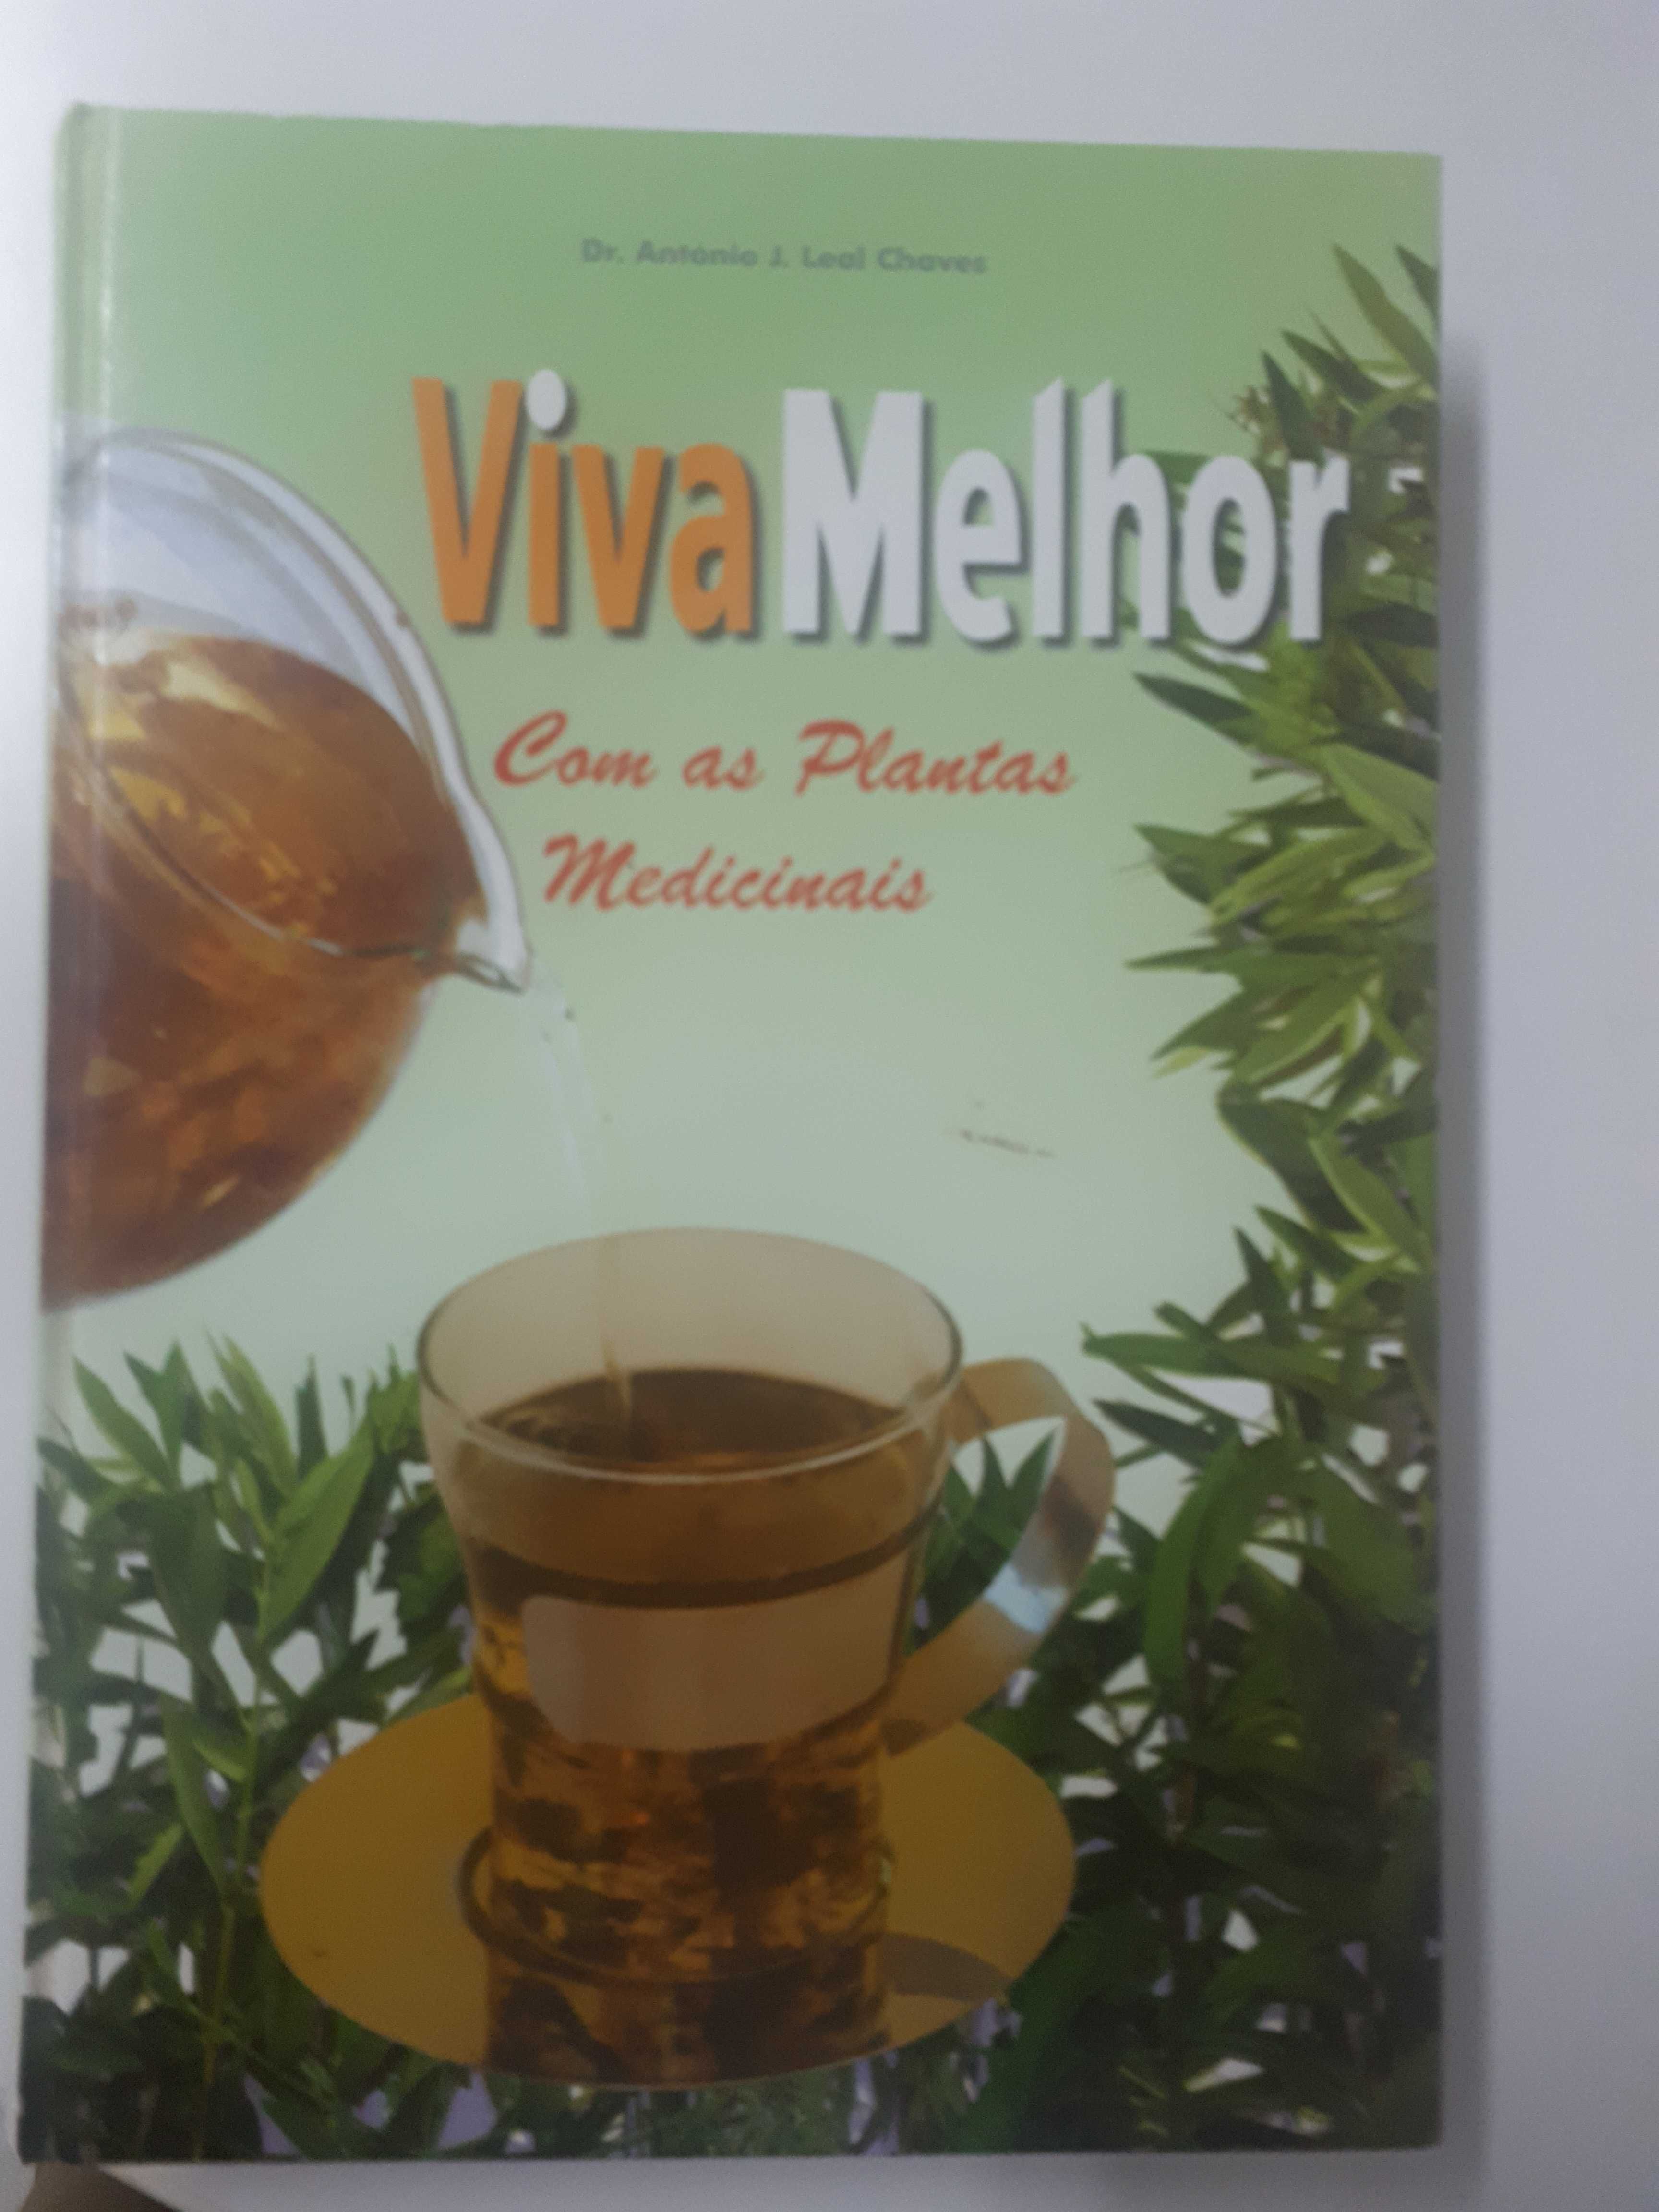 Dr. António J. Leal Chaves - Viva Melhor Com as Plantas Medicinais